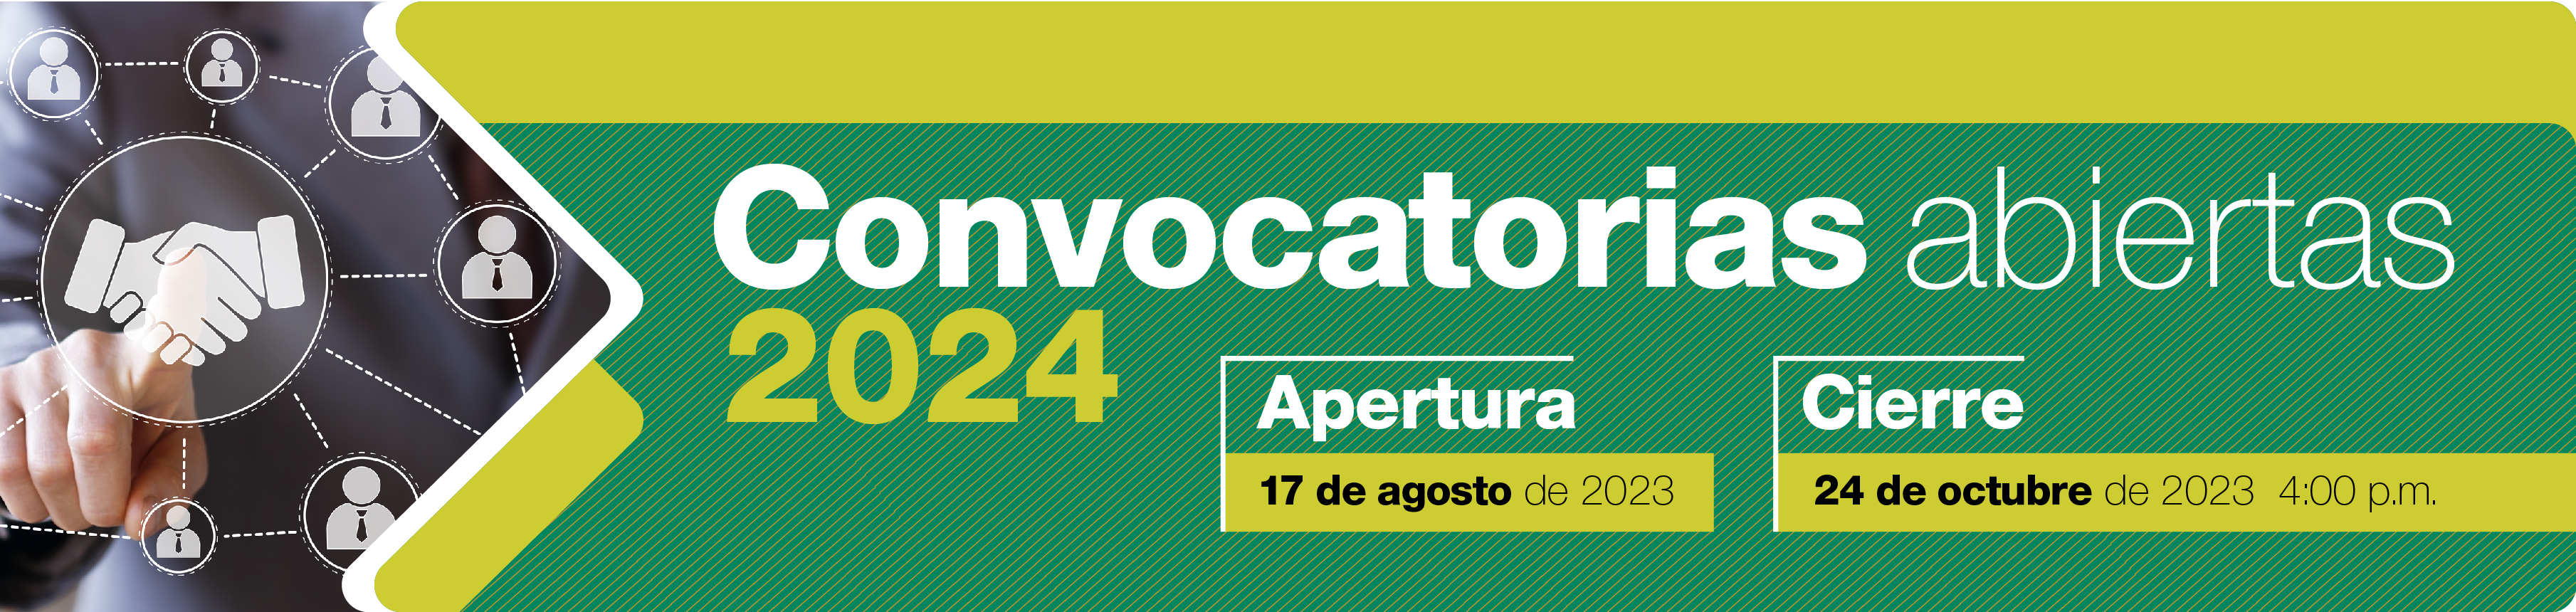 Banner-Convocatorias-2024-01.jpg